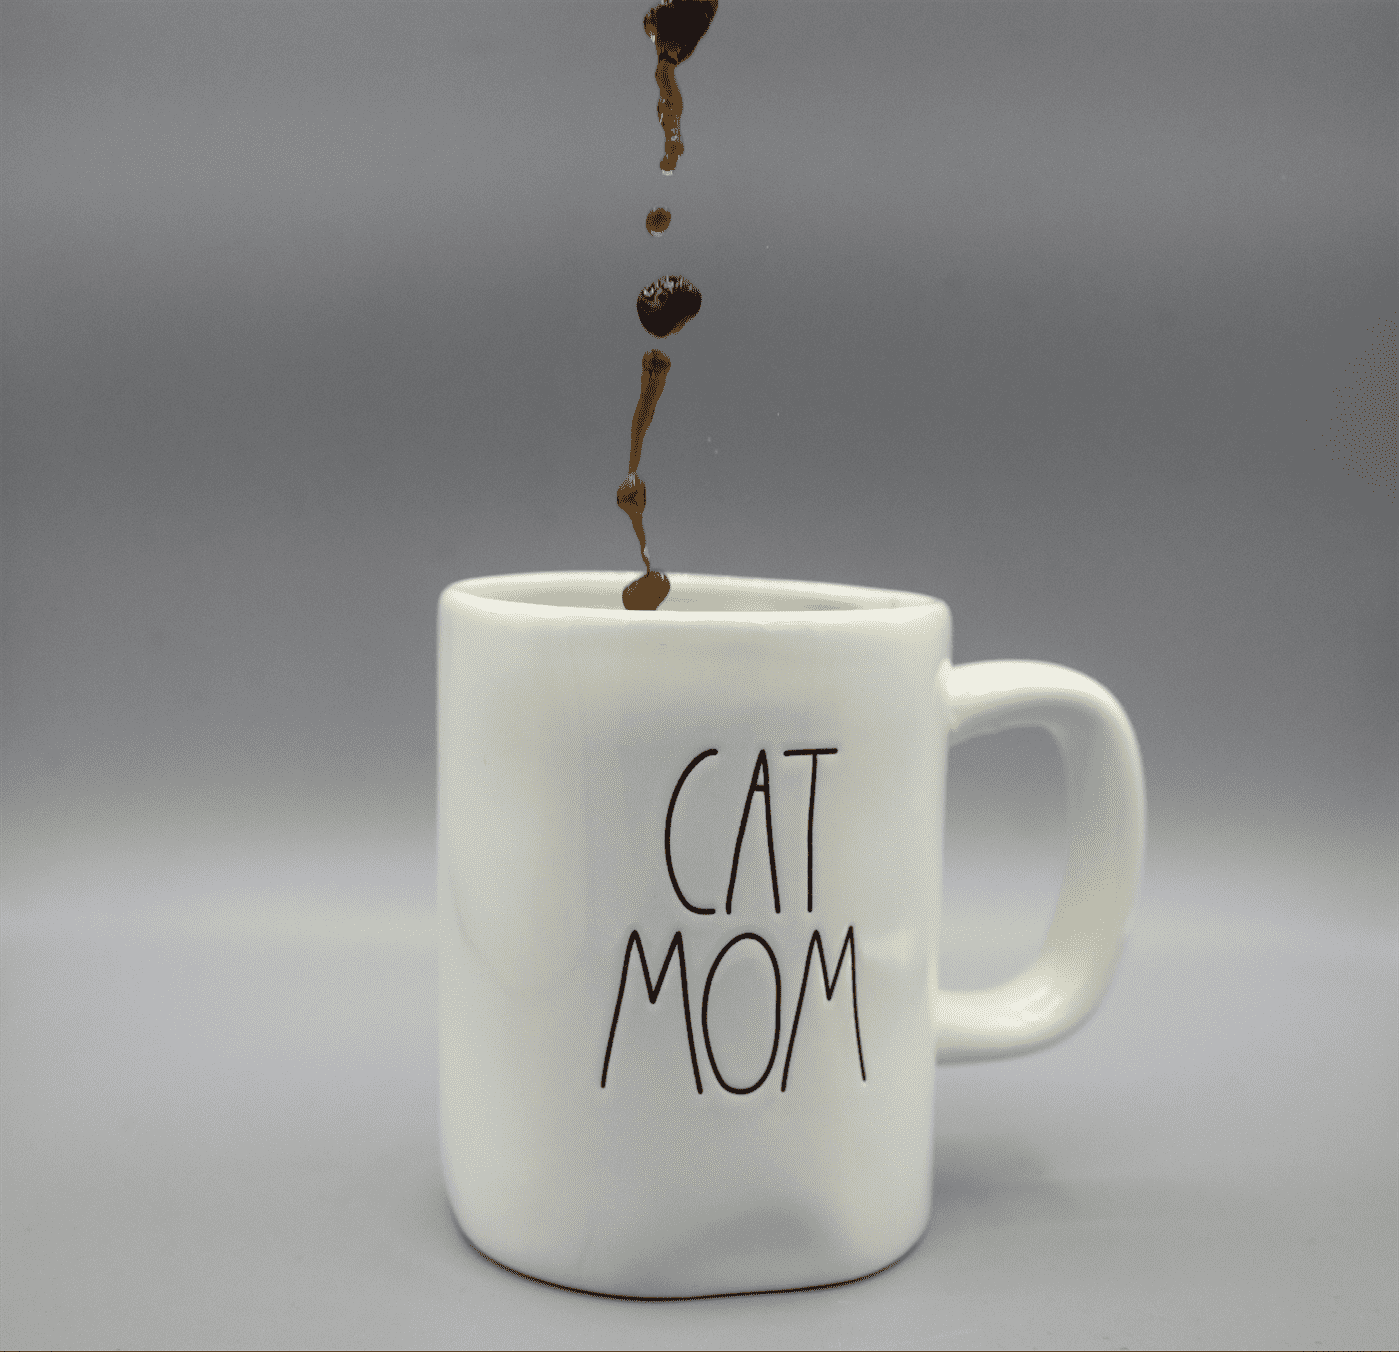 Cốc có dòng chữ Cat Mom